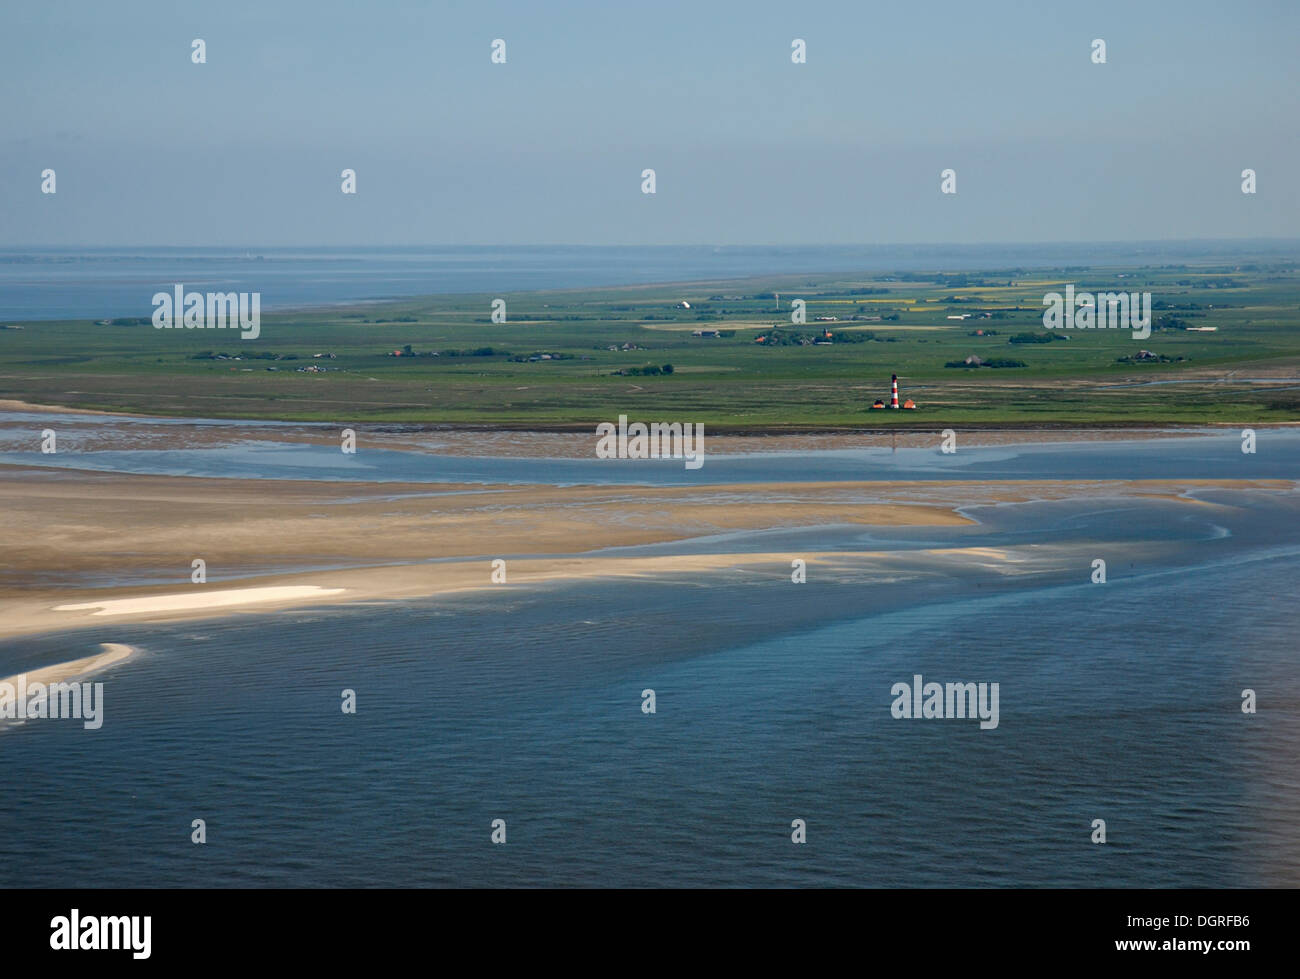 Vista del faro de Westerhever con una playa de barrera frente al mar, banco de arena y el interior de la península de Eiderstedt, Foto de stock